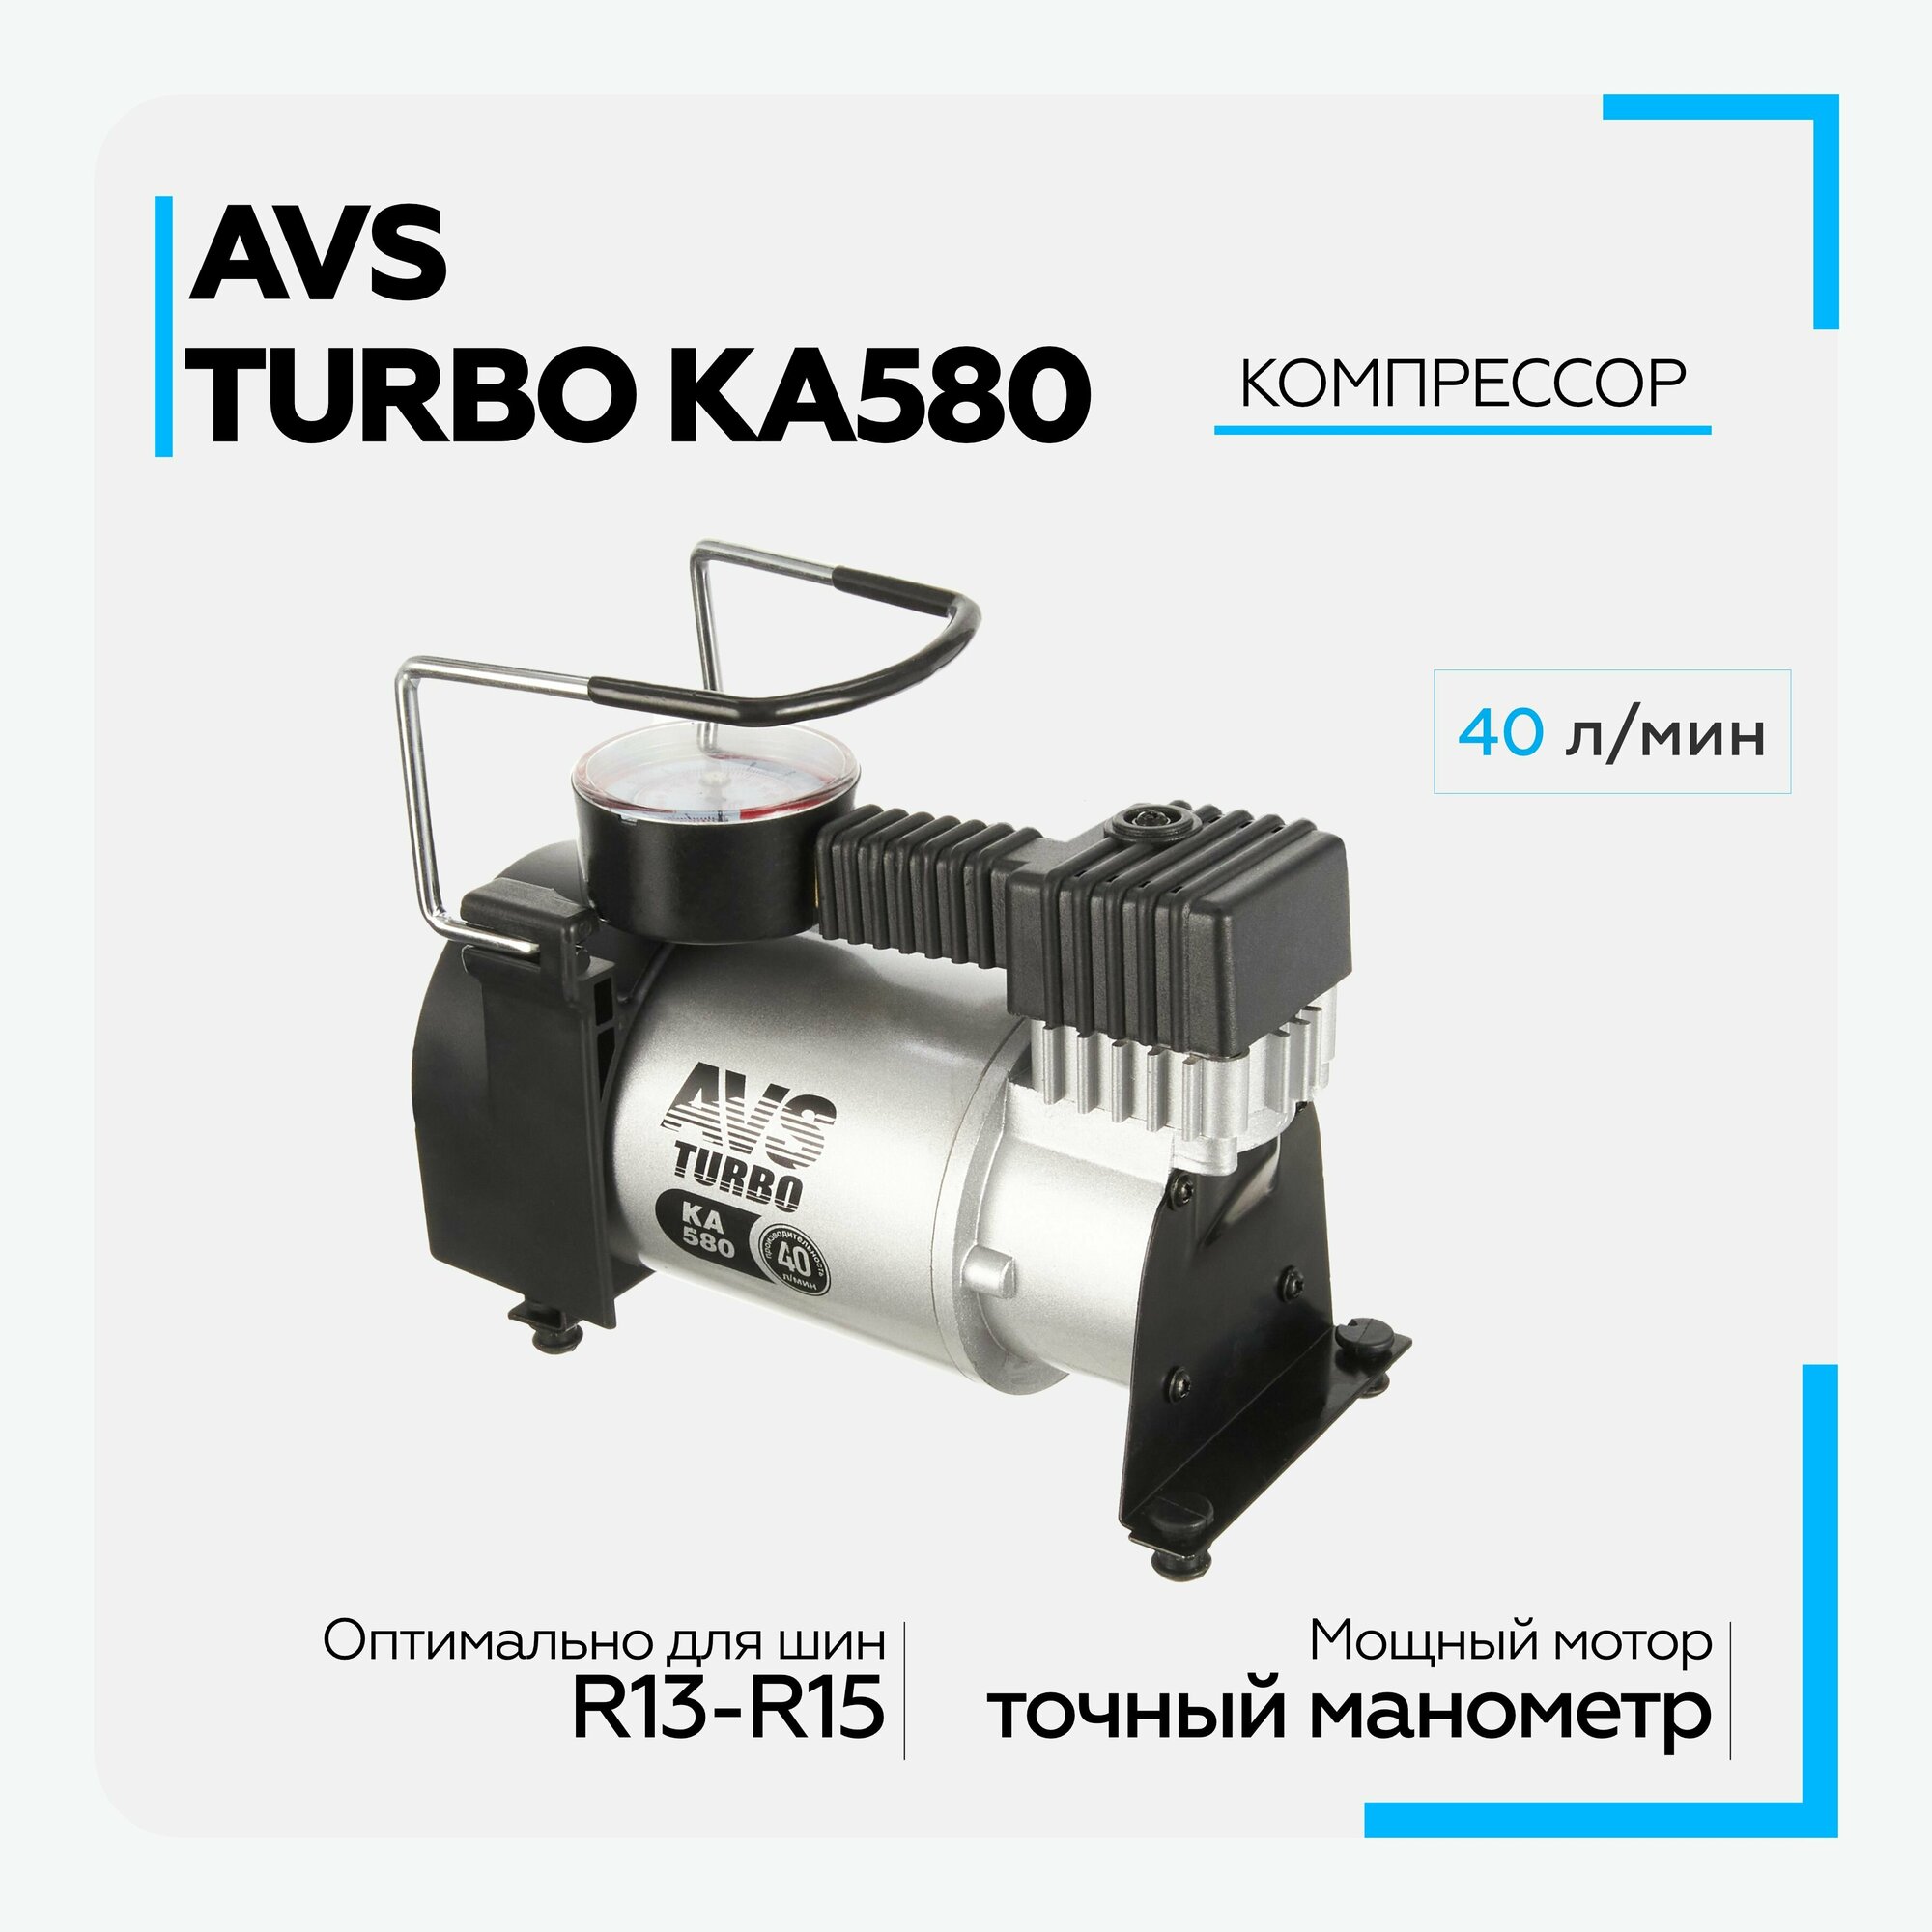 Компрессор автомобильный AVS Turbo KA580